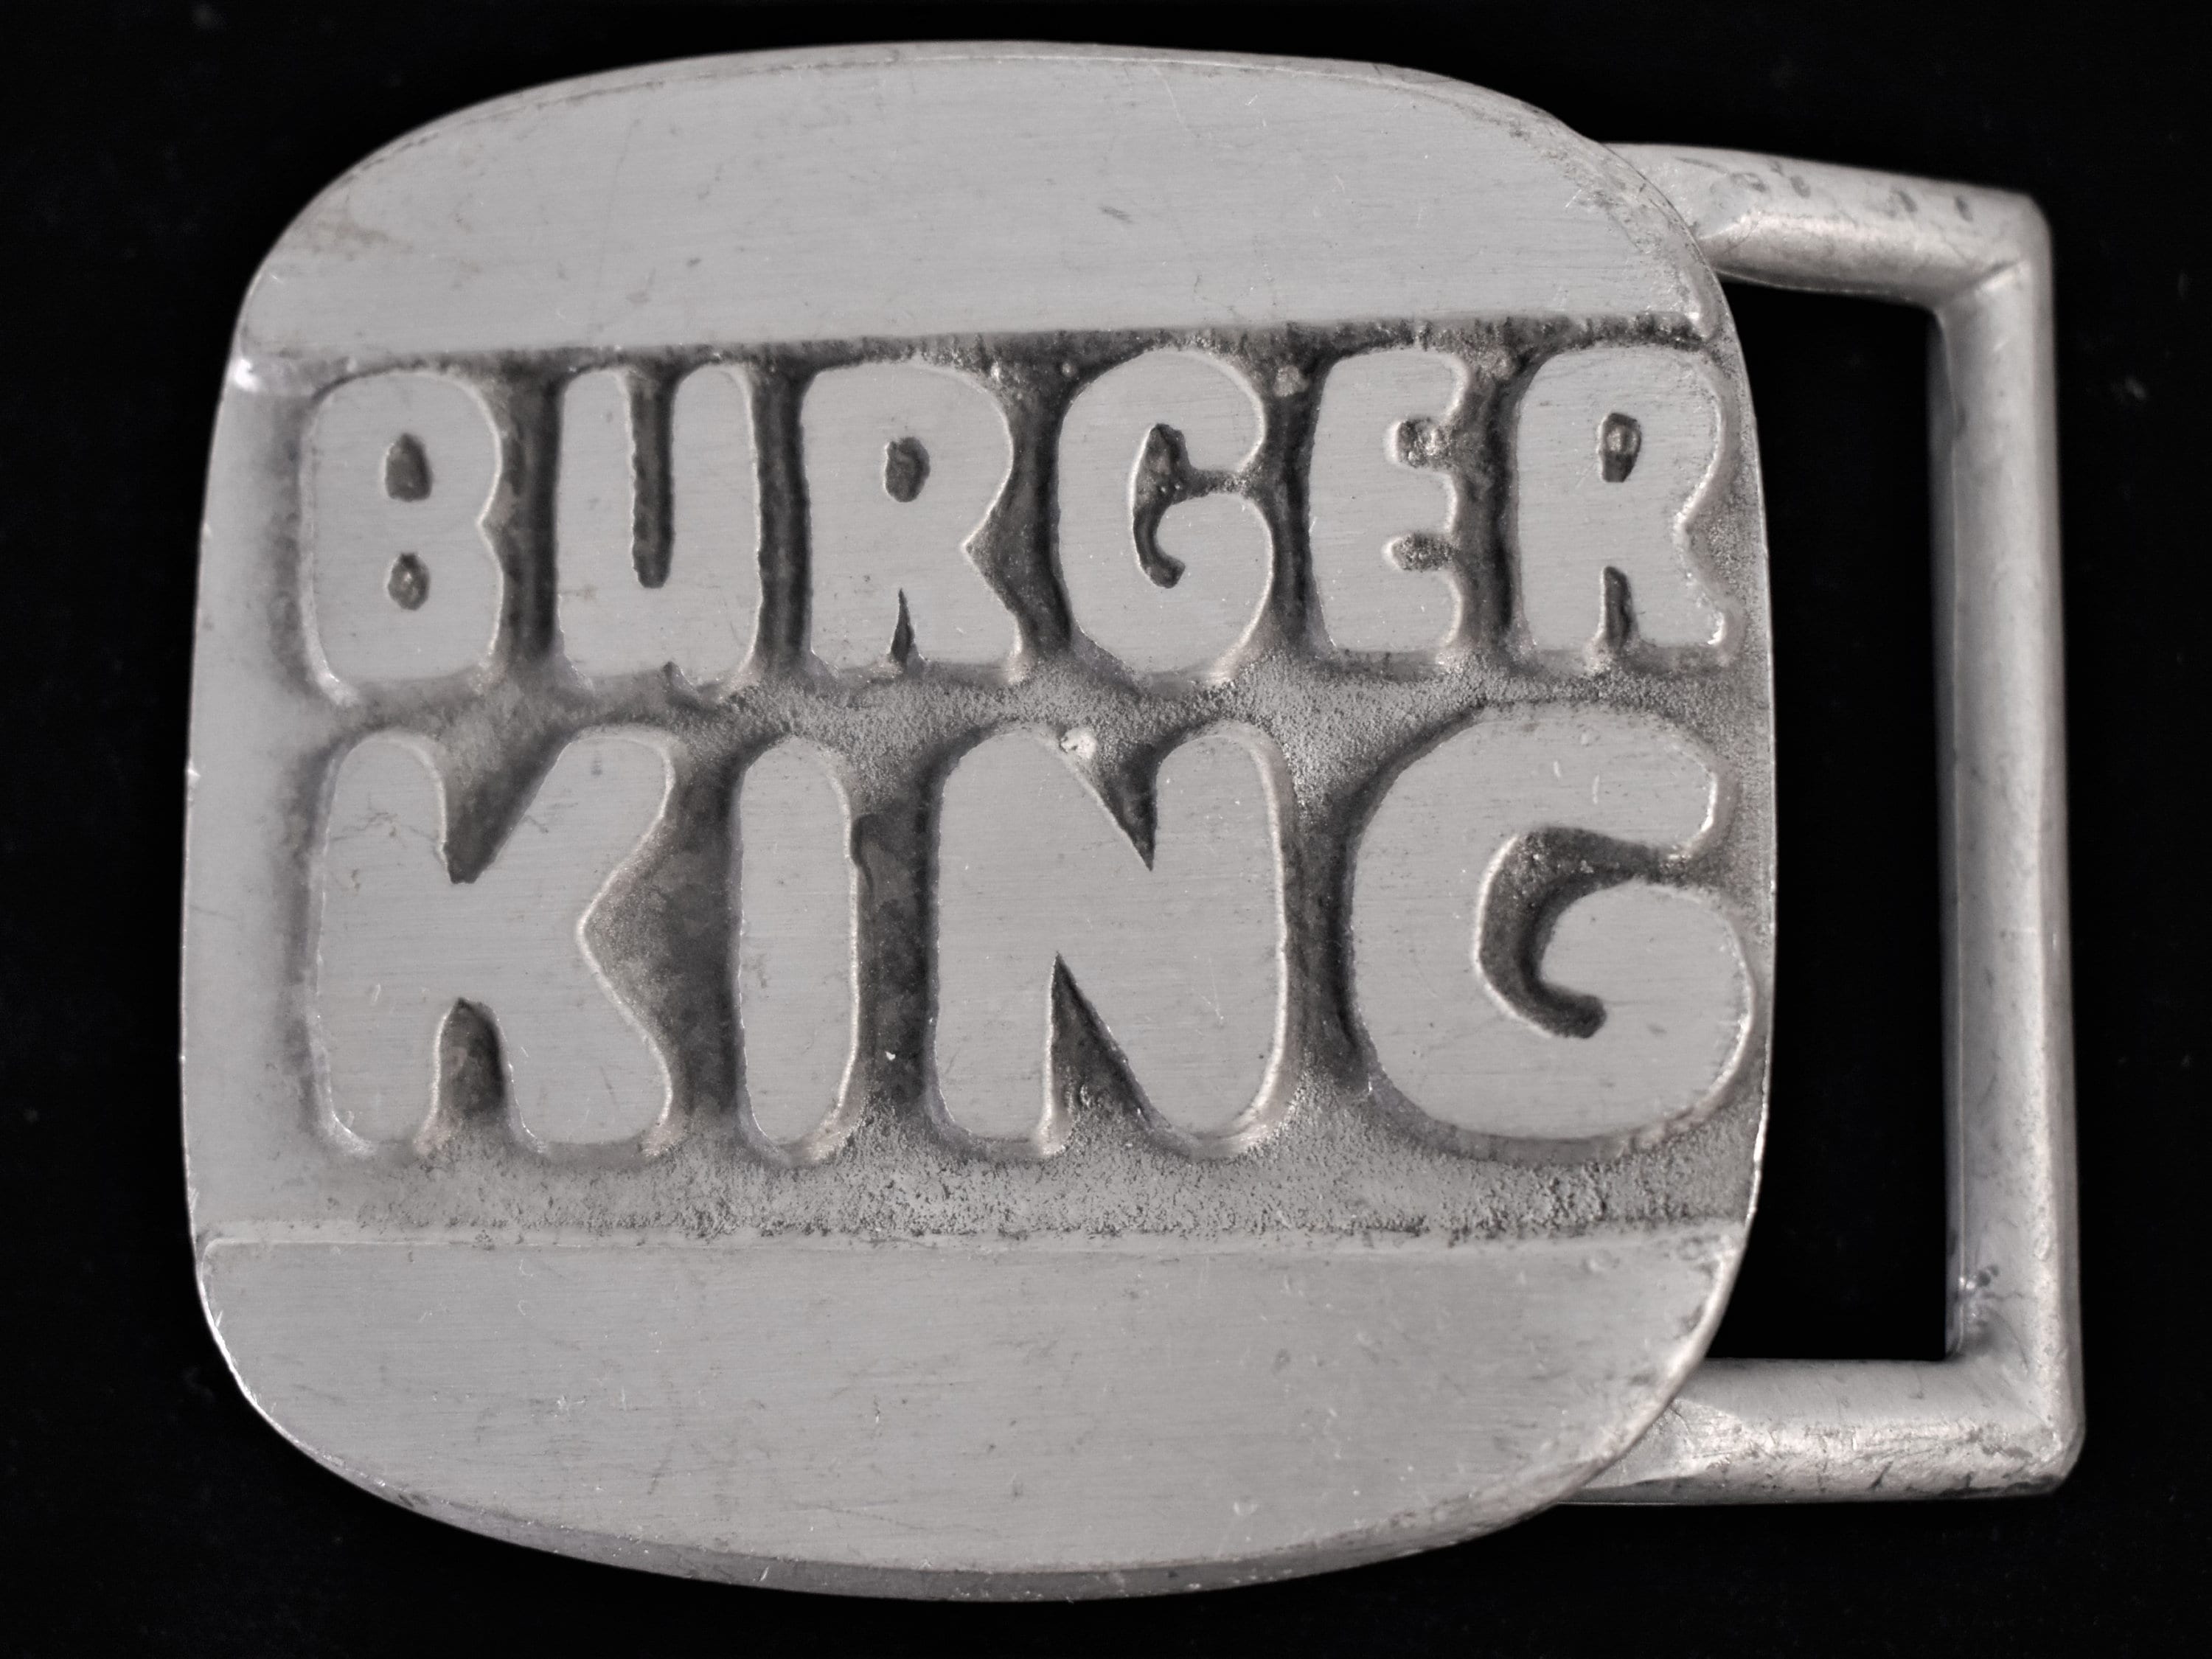 Burger King Fast Food Restaurant Vintage Belt Buckle BHS - Etsy